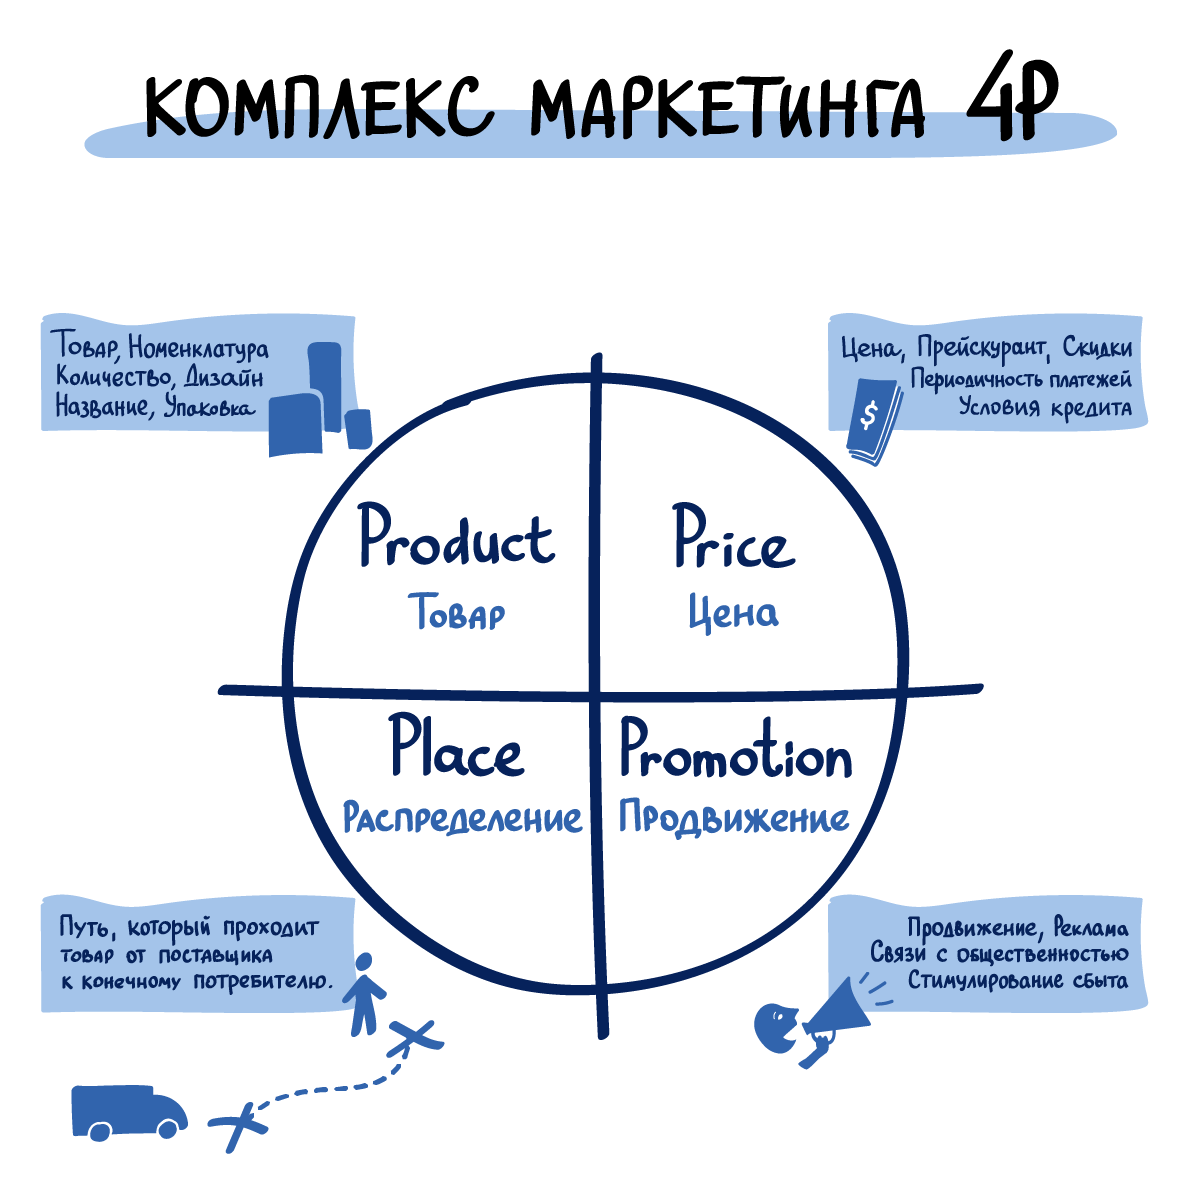 Примеры п 7. Маркетинговая стратегия 4п. Модель комплекса маркетинга 4p. 4p в маркетинге Котлер. Система 4p в маркетинге.